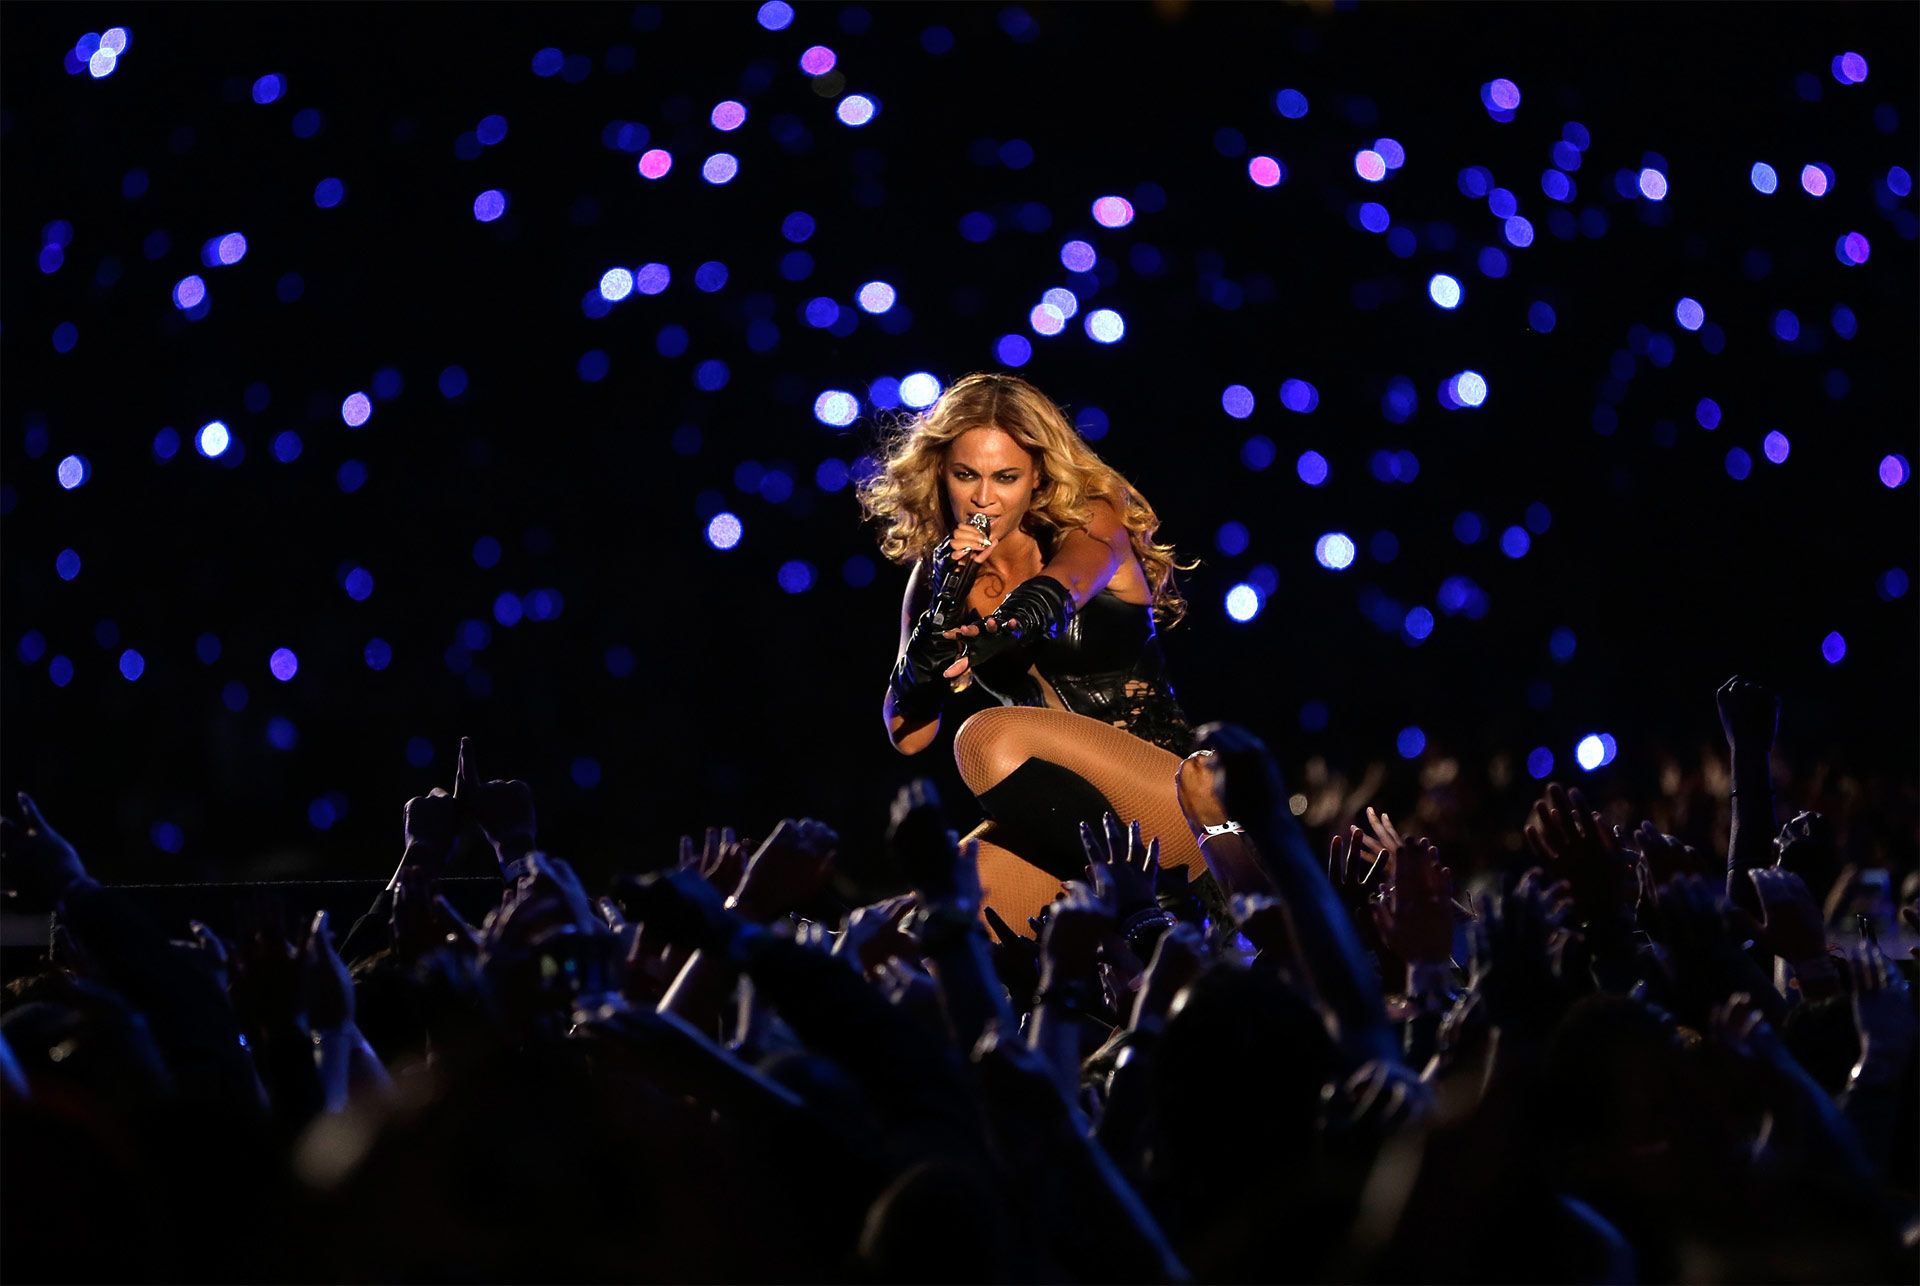 La súper estrella del pop se volverá a presentar en el espectáculo musical de la final de fútbol americano